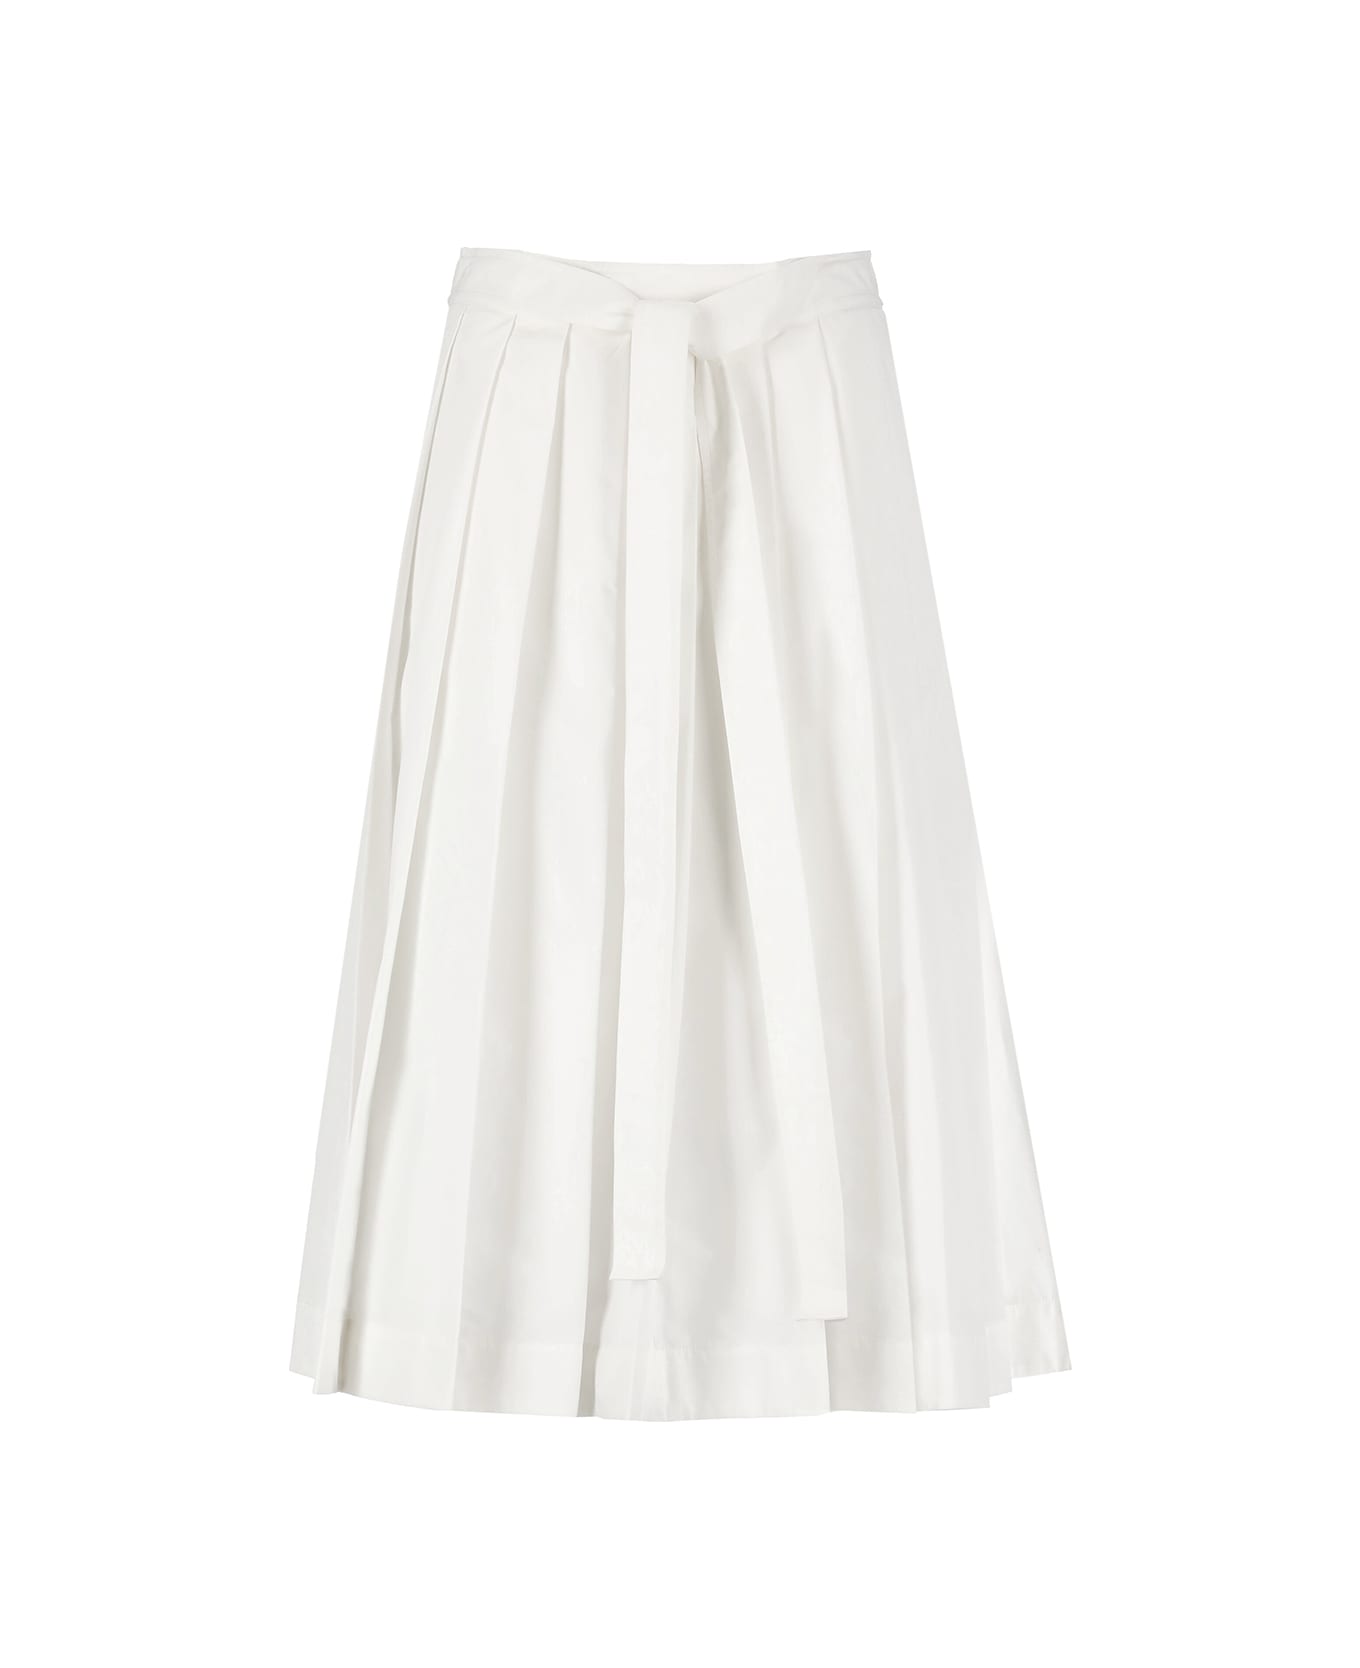 3.1 Phillip Lim Knife Pleat Skirt - White スカート